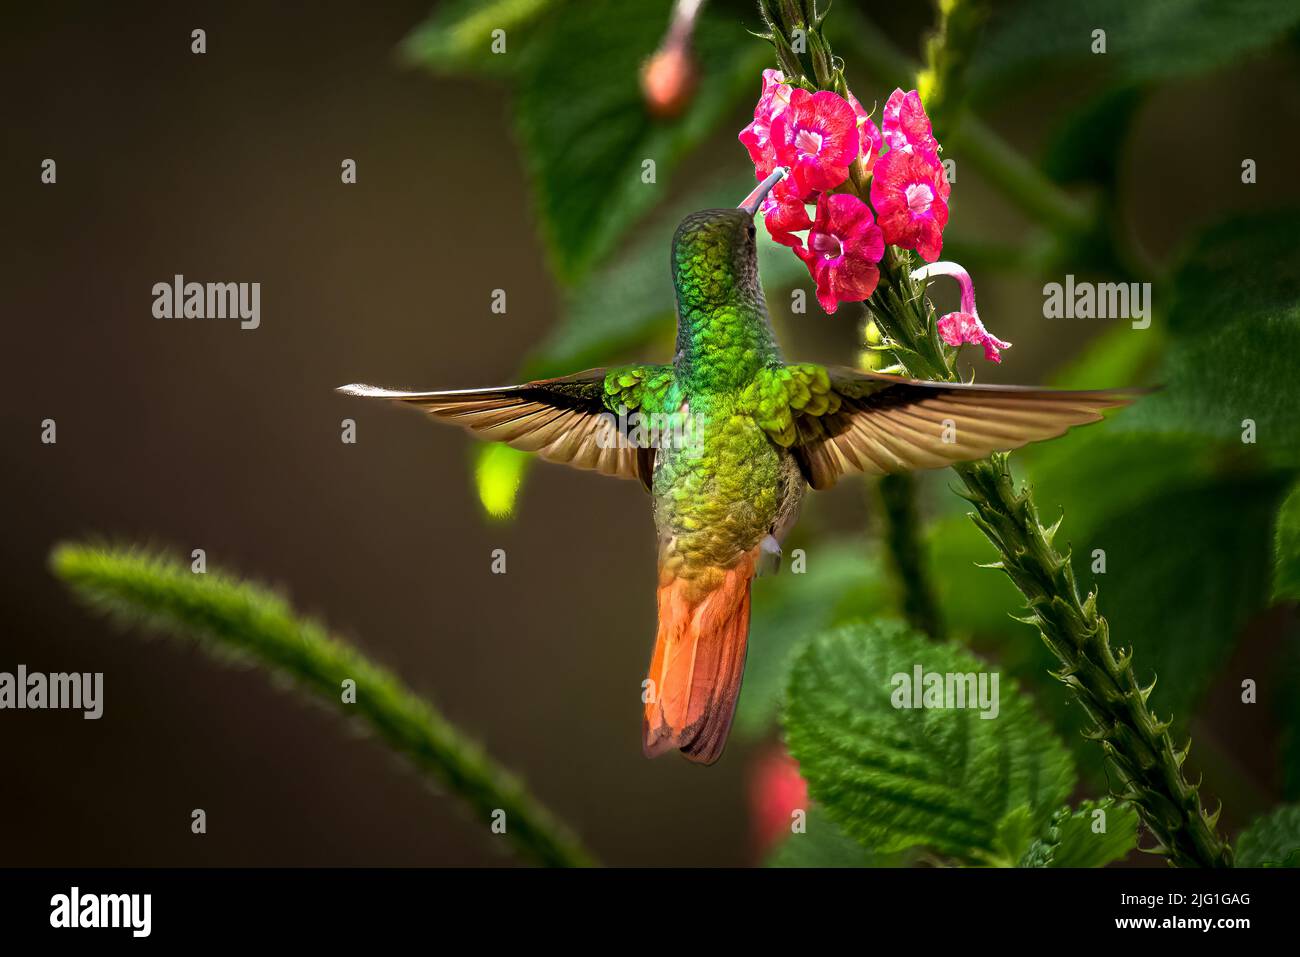 Colibrí de cola rufa en vuelo alimentándose sobre una flor roja con fondo verde Foto de stock